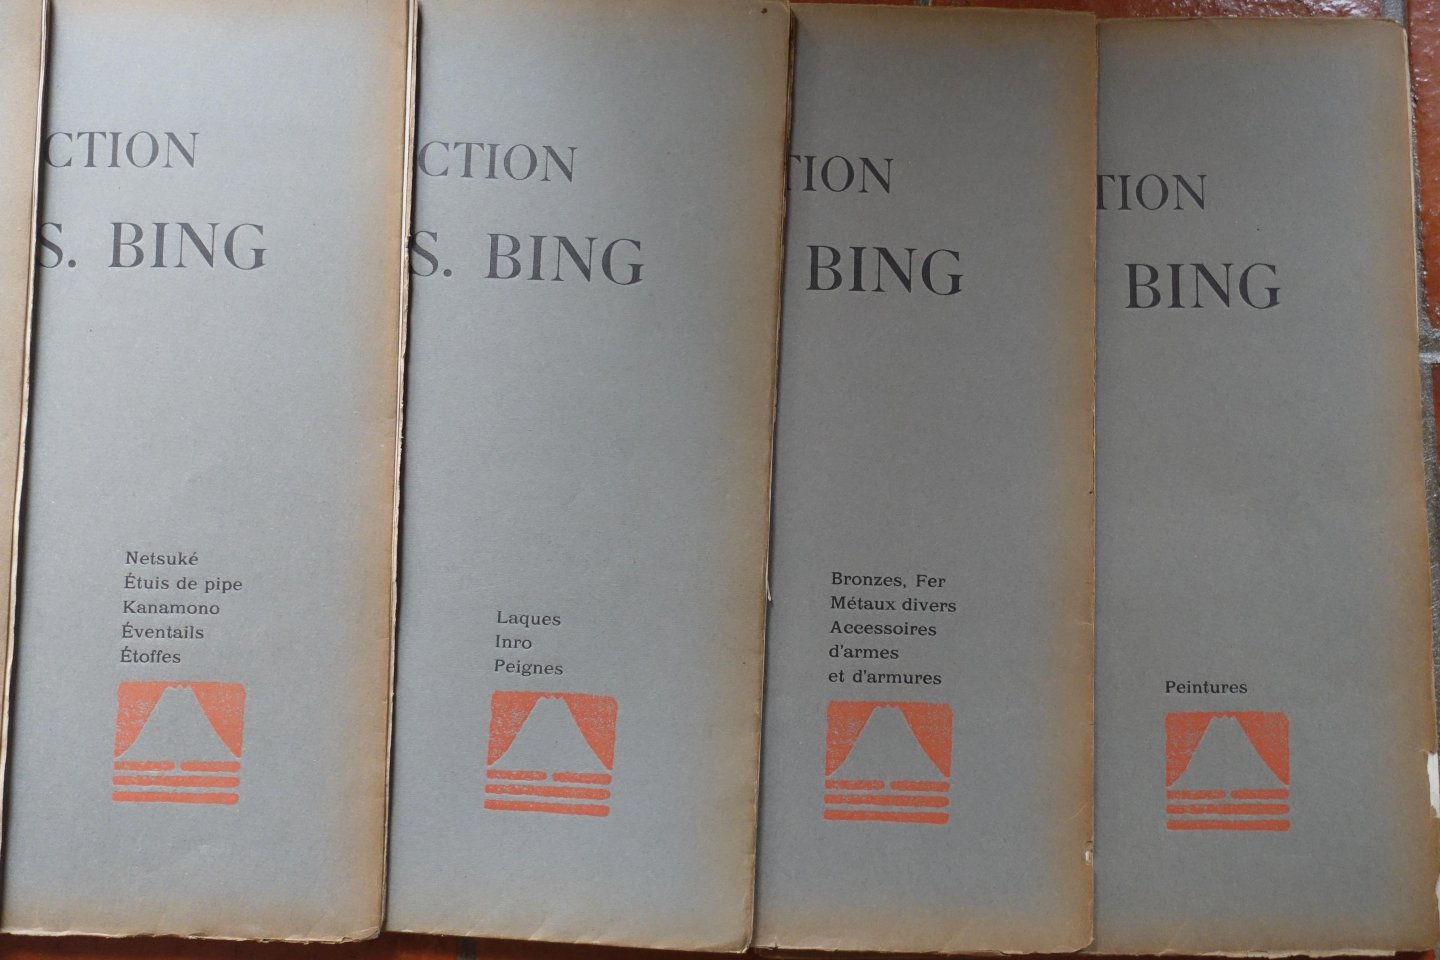 Bing, S. - Japan - China - Collection S. [Siegfried ] Bing. Objets d'art et peintures du Japon et de la Chine. Dont la vente aura lieu du Lundi 7 au Samedi 12 Mai 1906 inclus